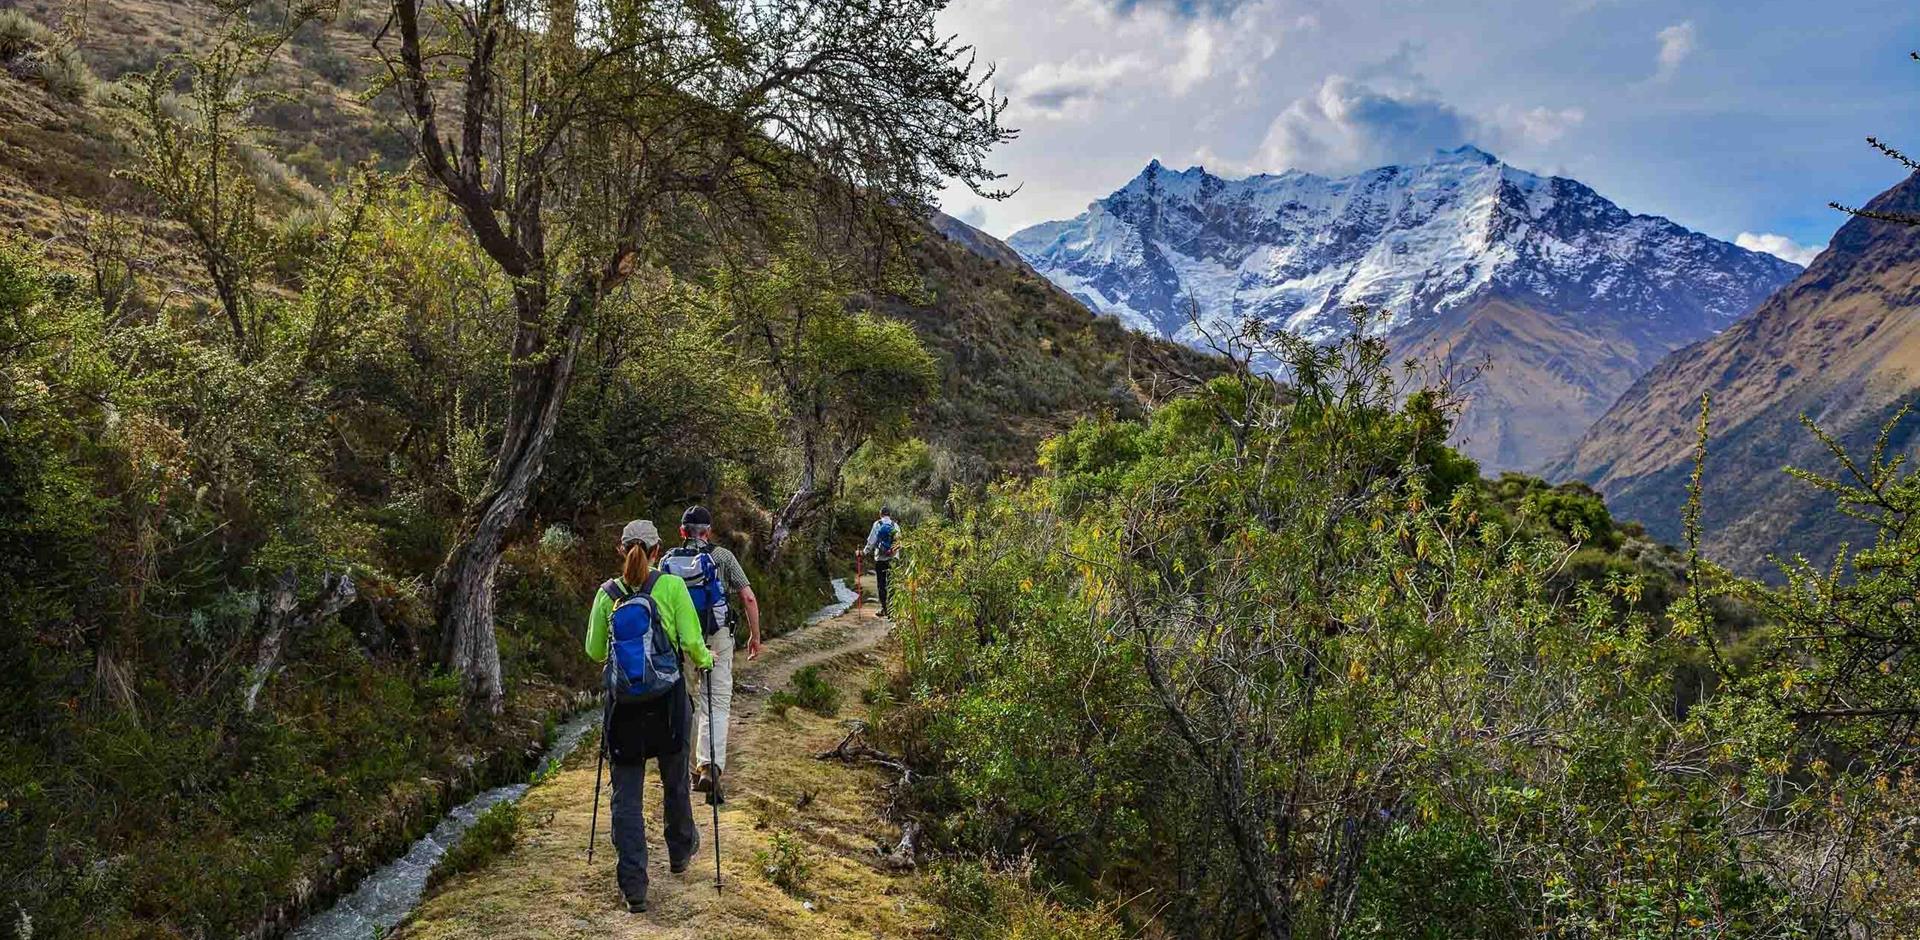 Peru's Inca trails